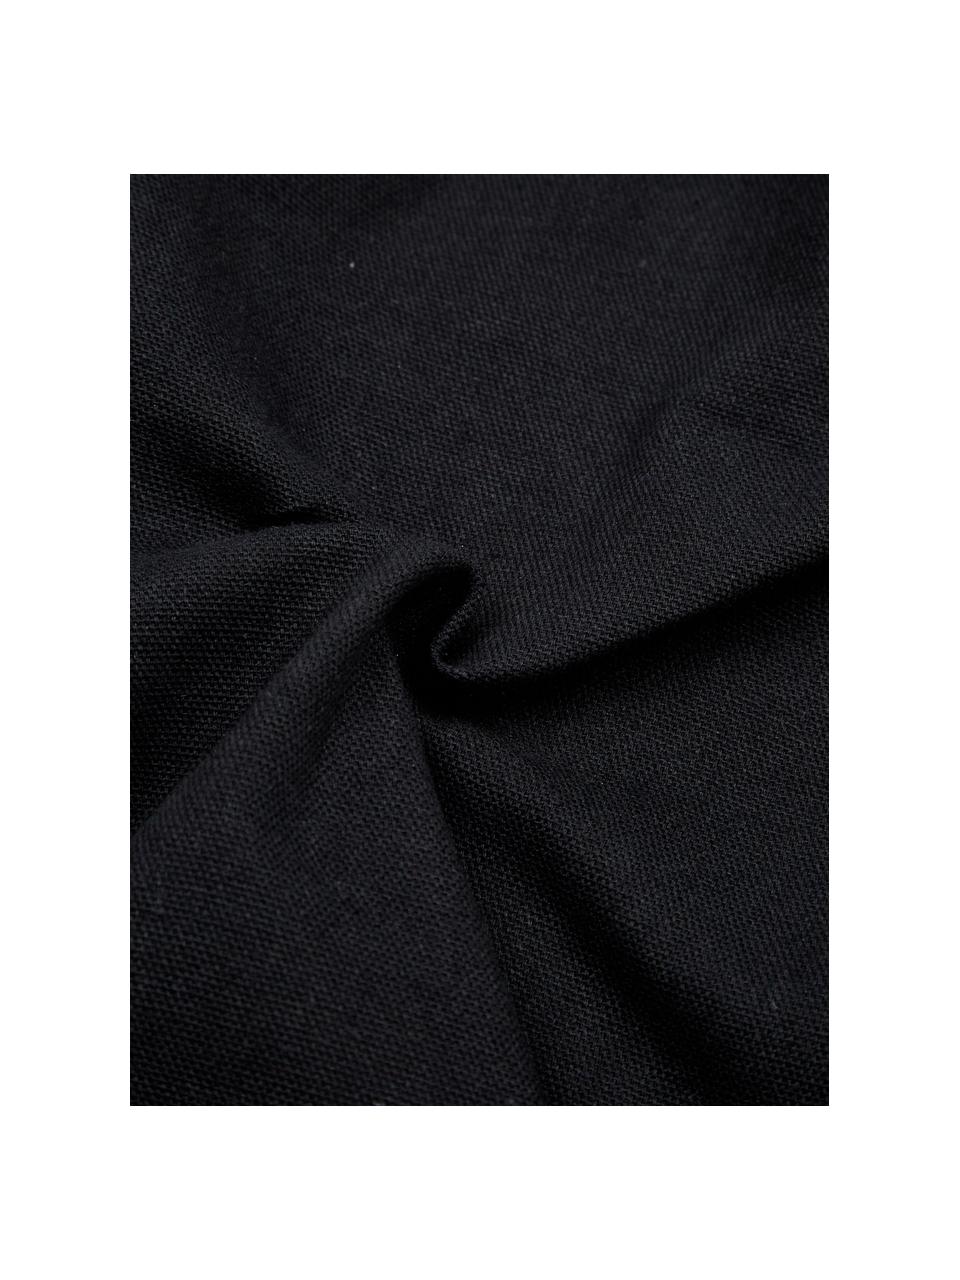 Poszewka na poduszkę Joana, 100% bawełna, Beżowy, czarny, S 45 x D 45 cm